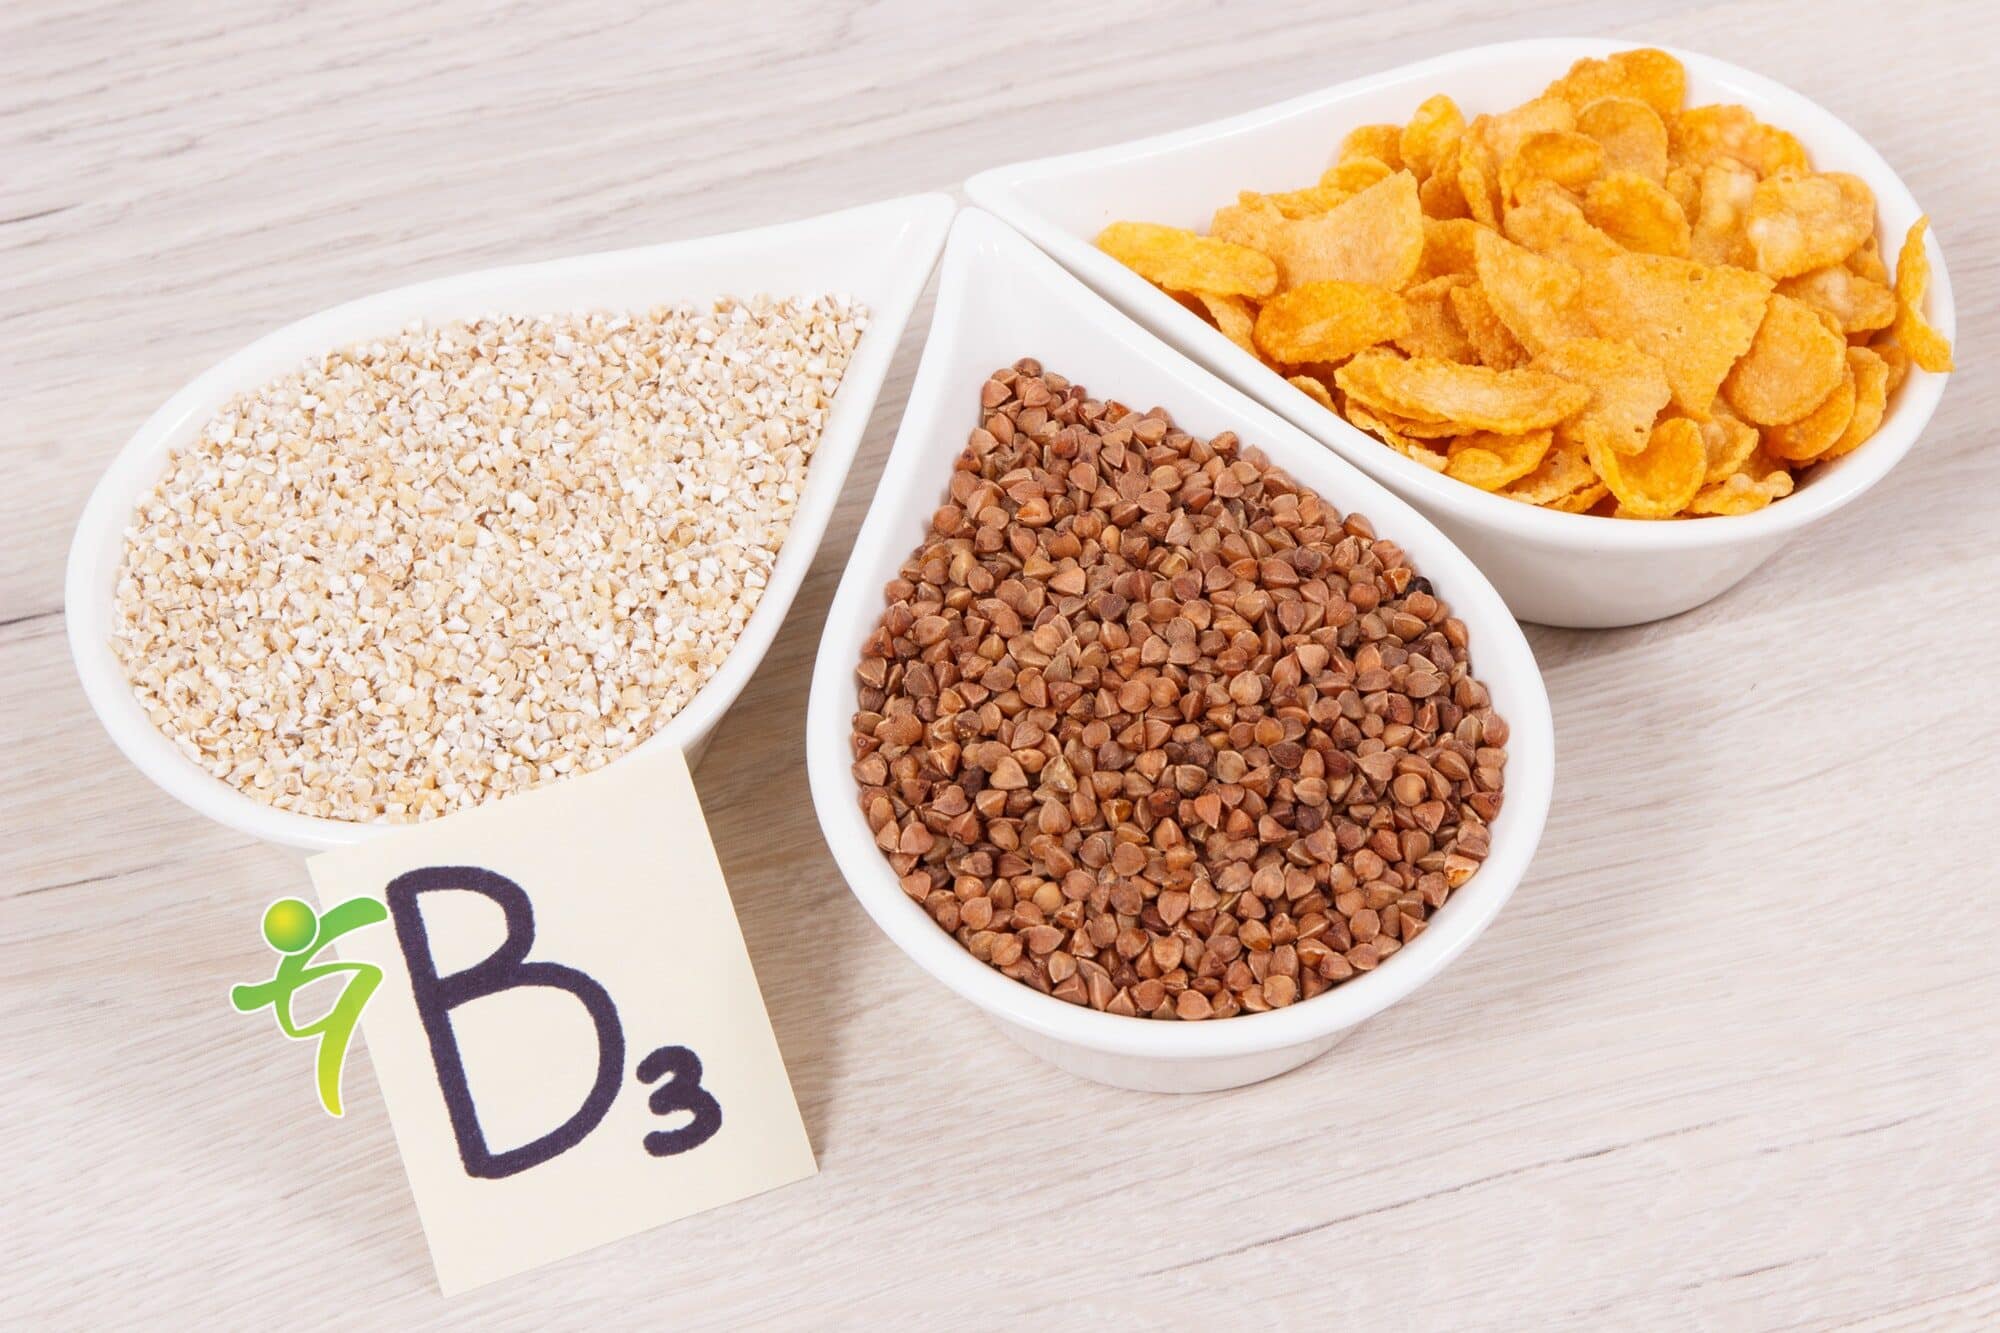 Nährstoffreiche Produkte mit Vitamin B3 und anderen natürlichen Mineralien, gesundes Ernährungskonzept